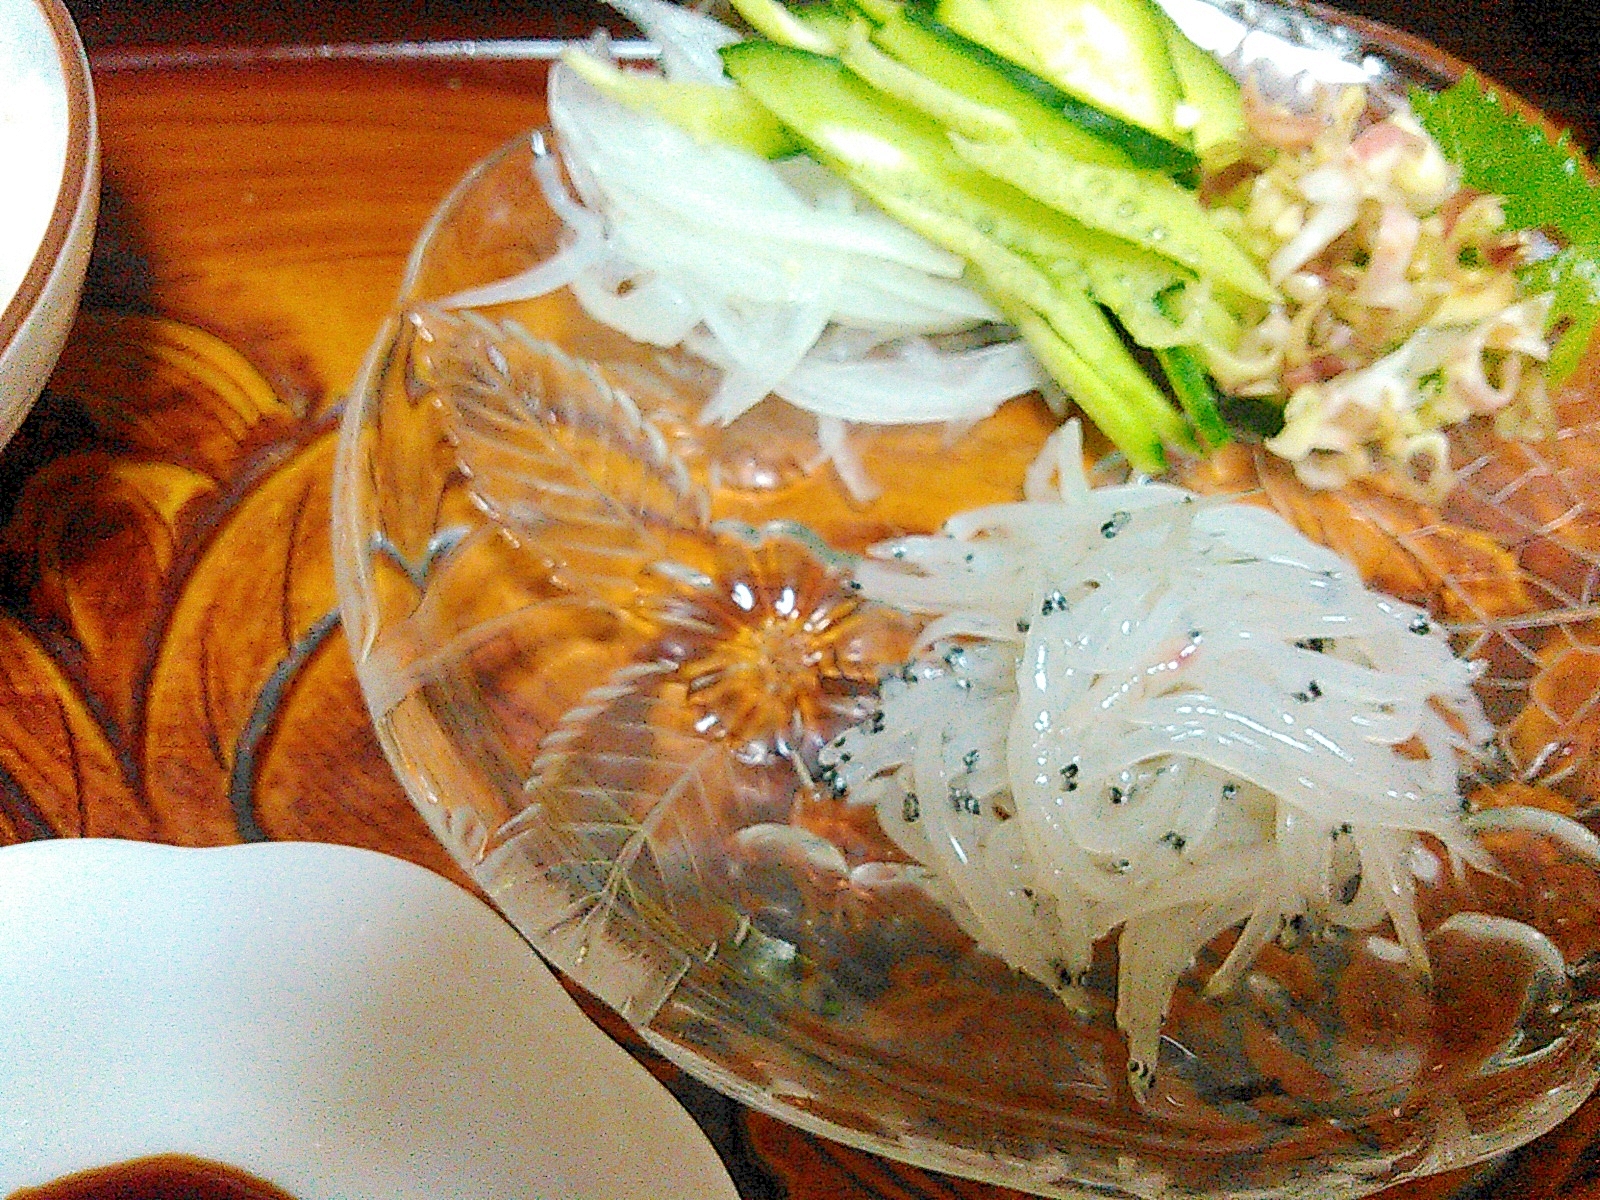 生白魚のサラダ